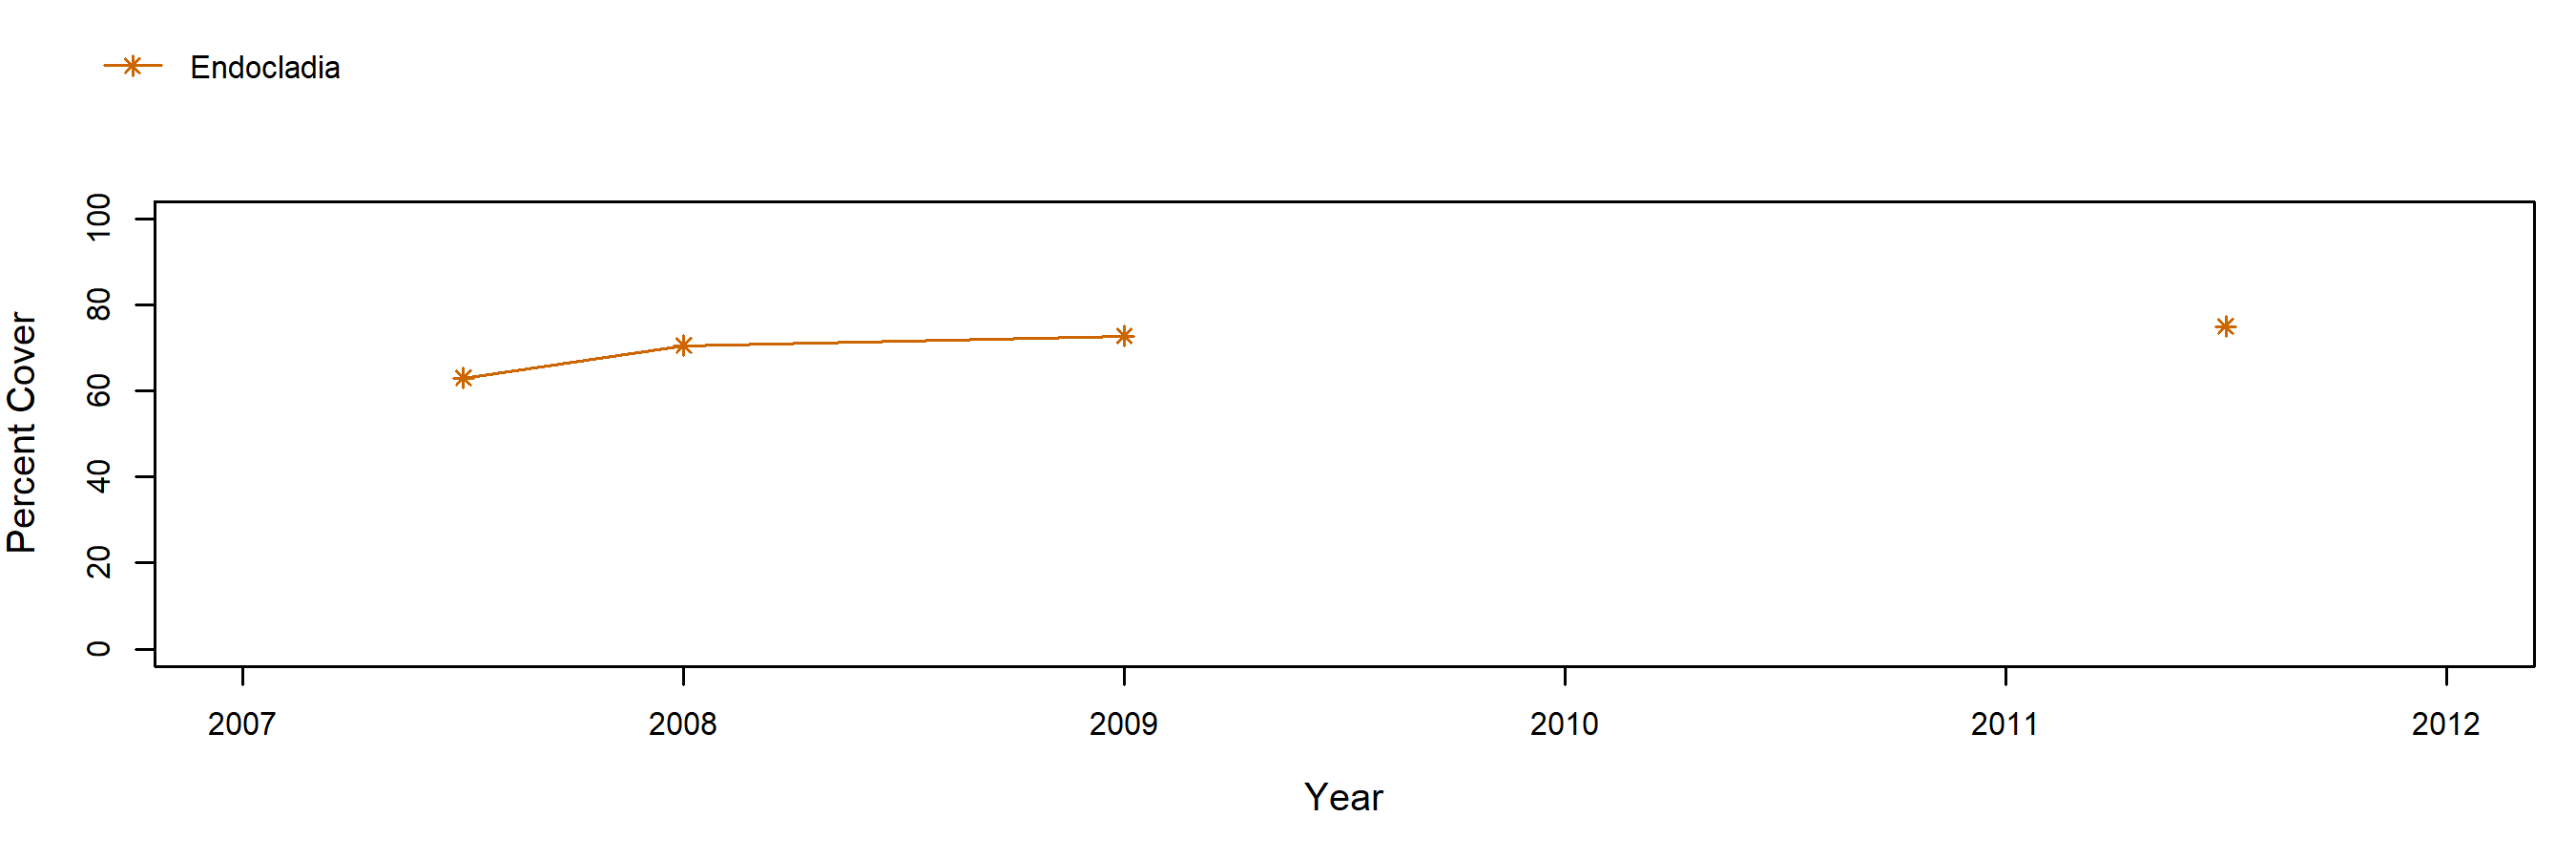 Garrapata Endocladia trend plot